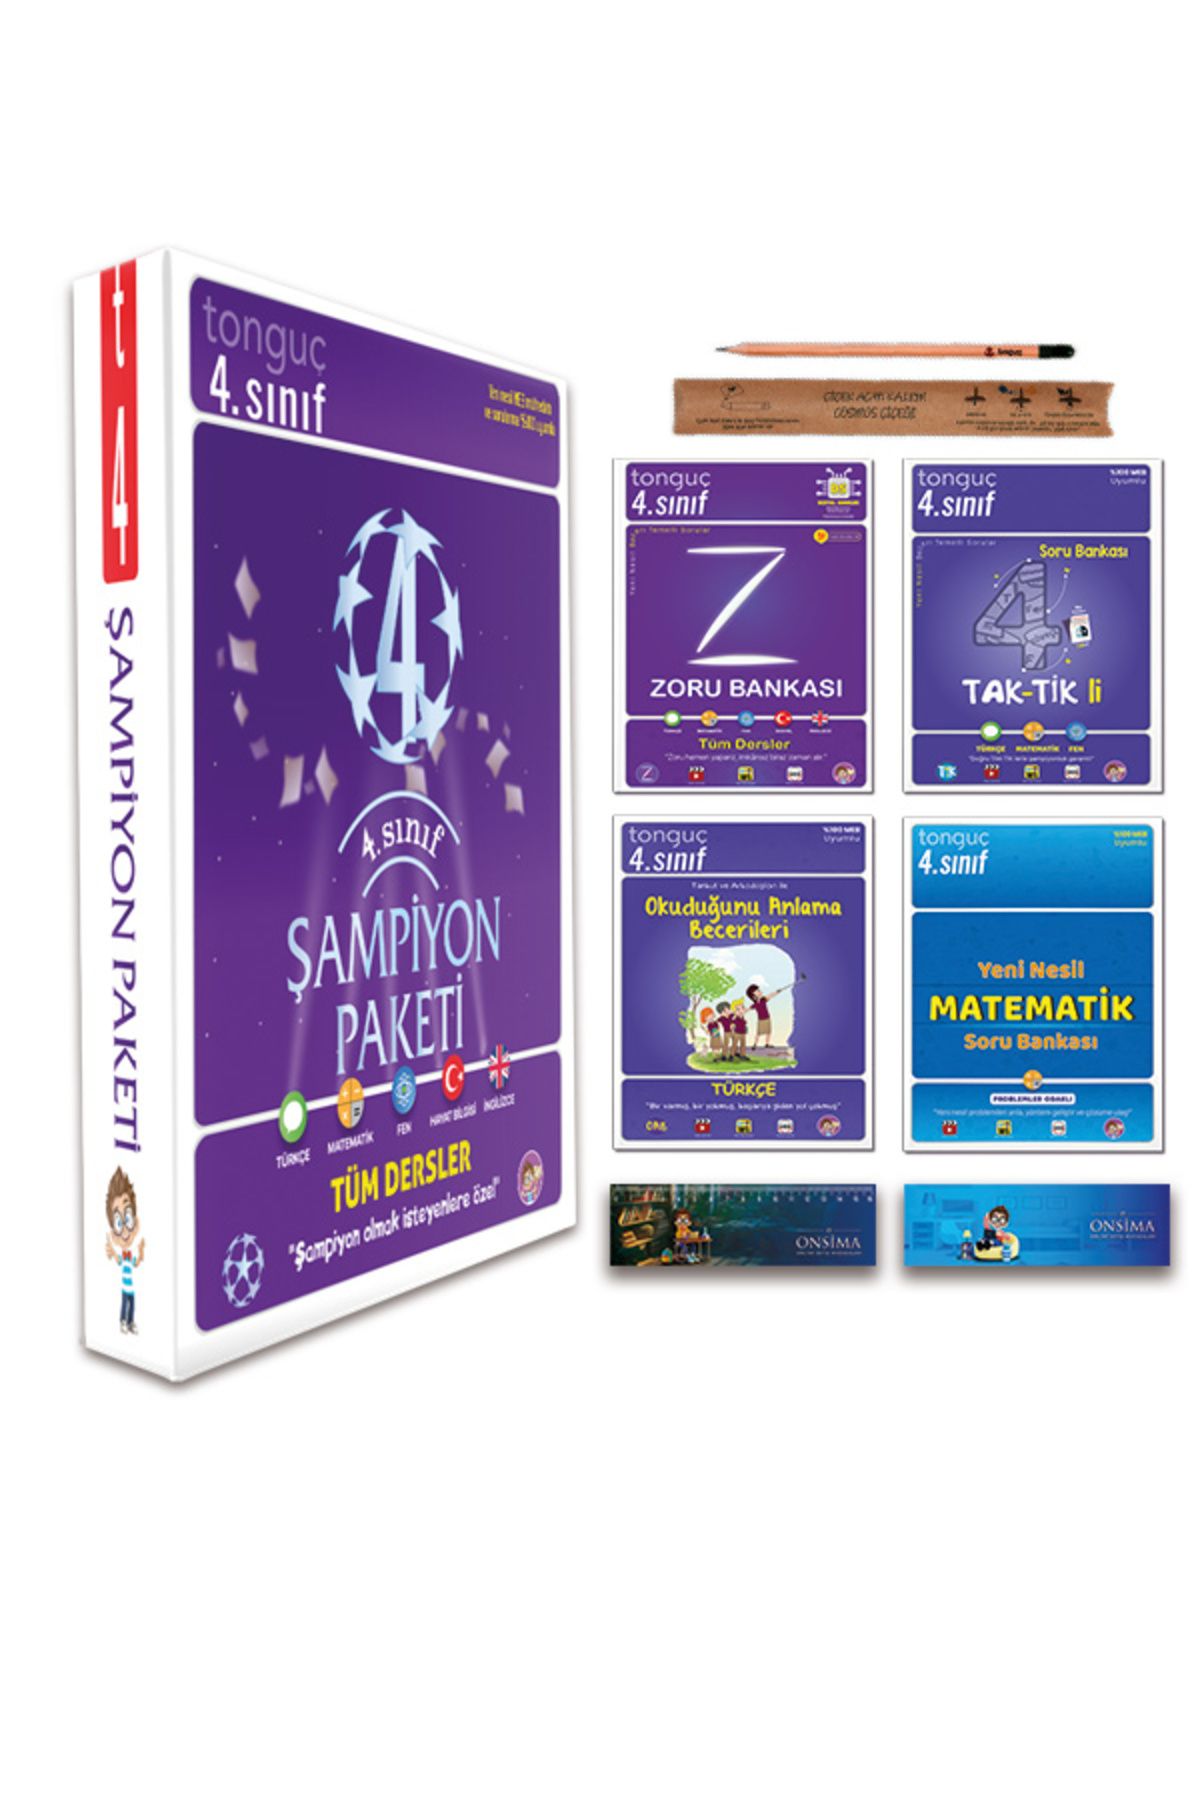 Tonguç Yayınları 4. Sınıf Şampiyon Paketi Tüm Dersleri Soru Bankası Seti 4 Kitap